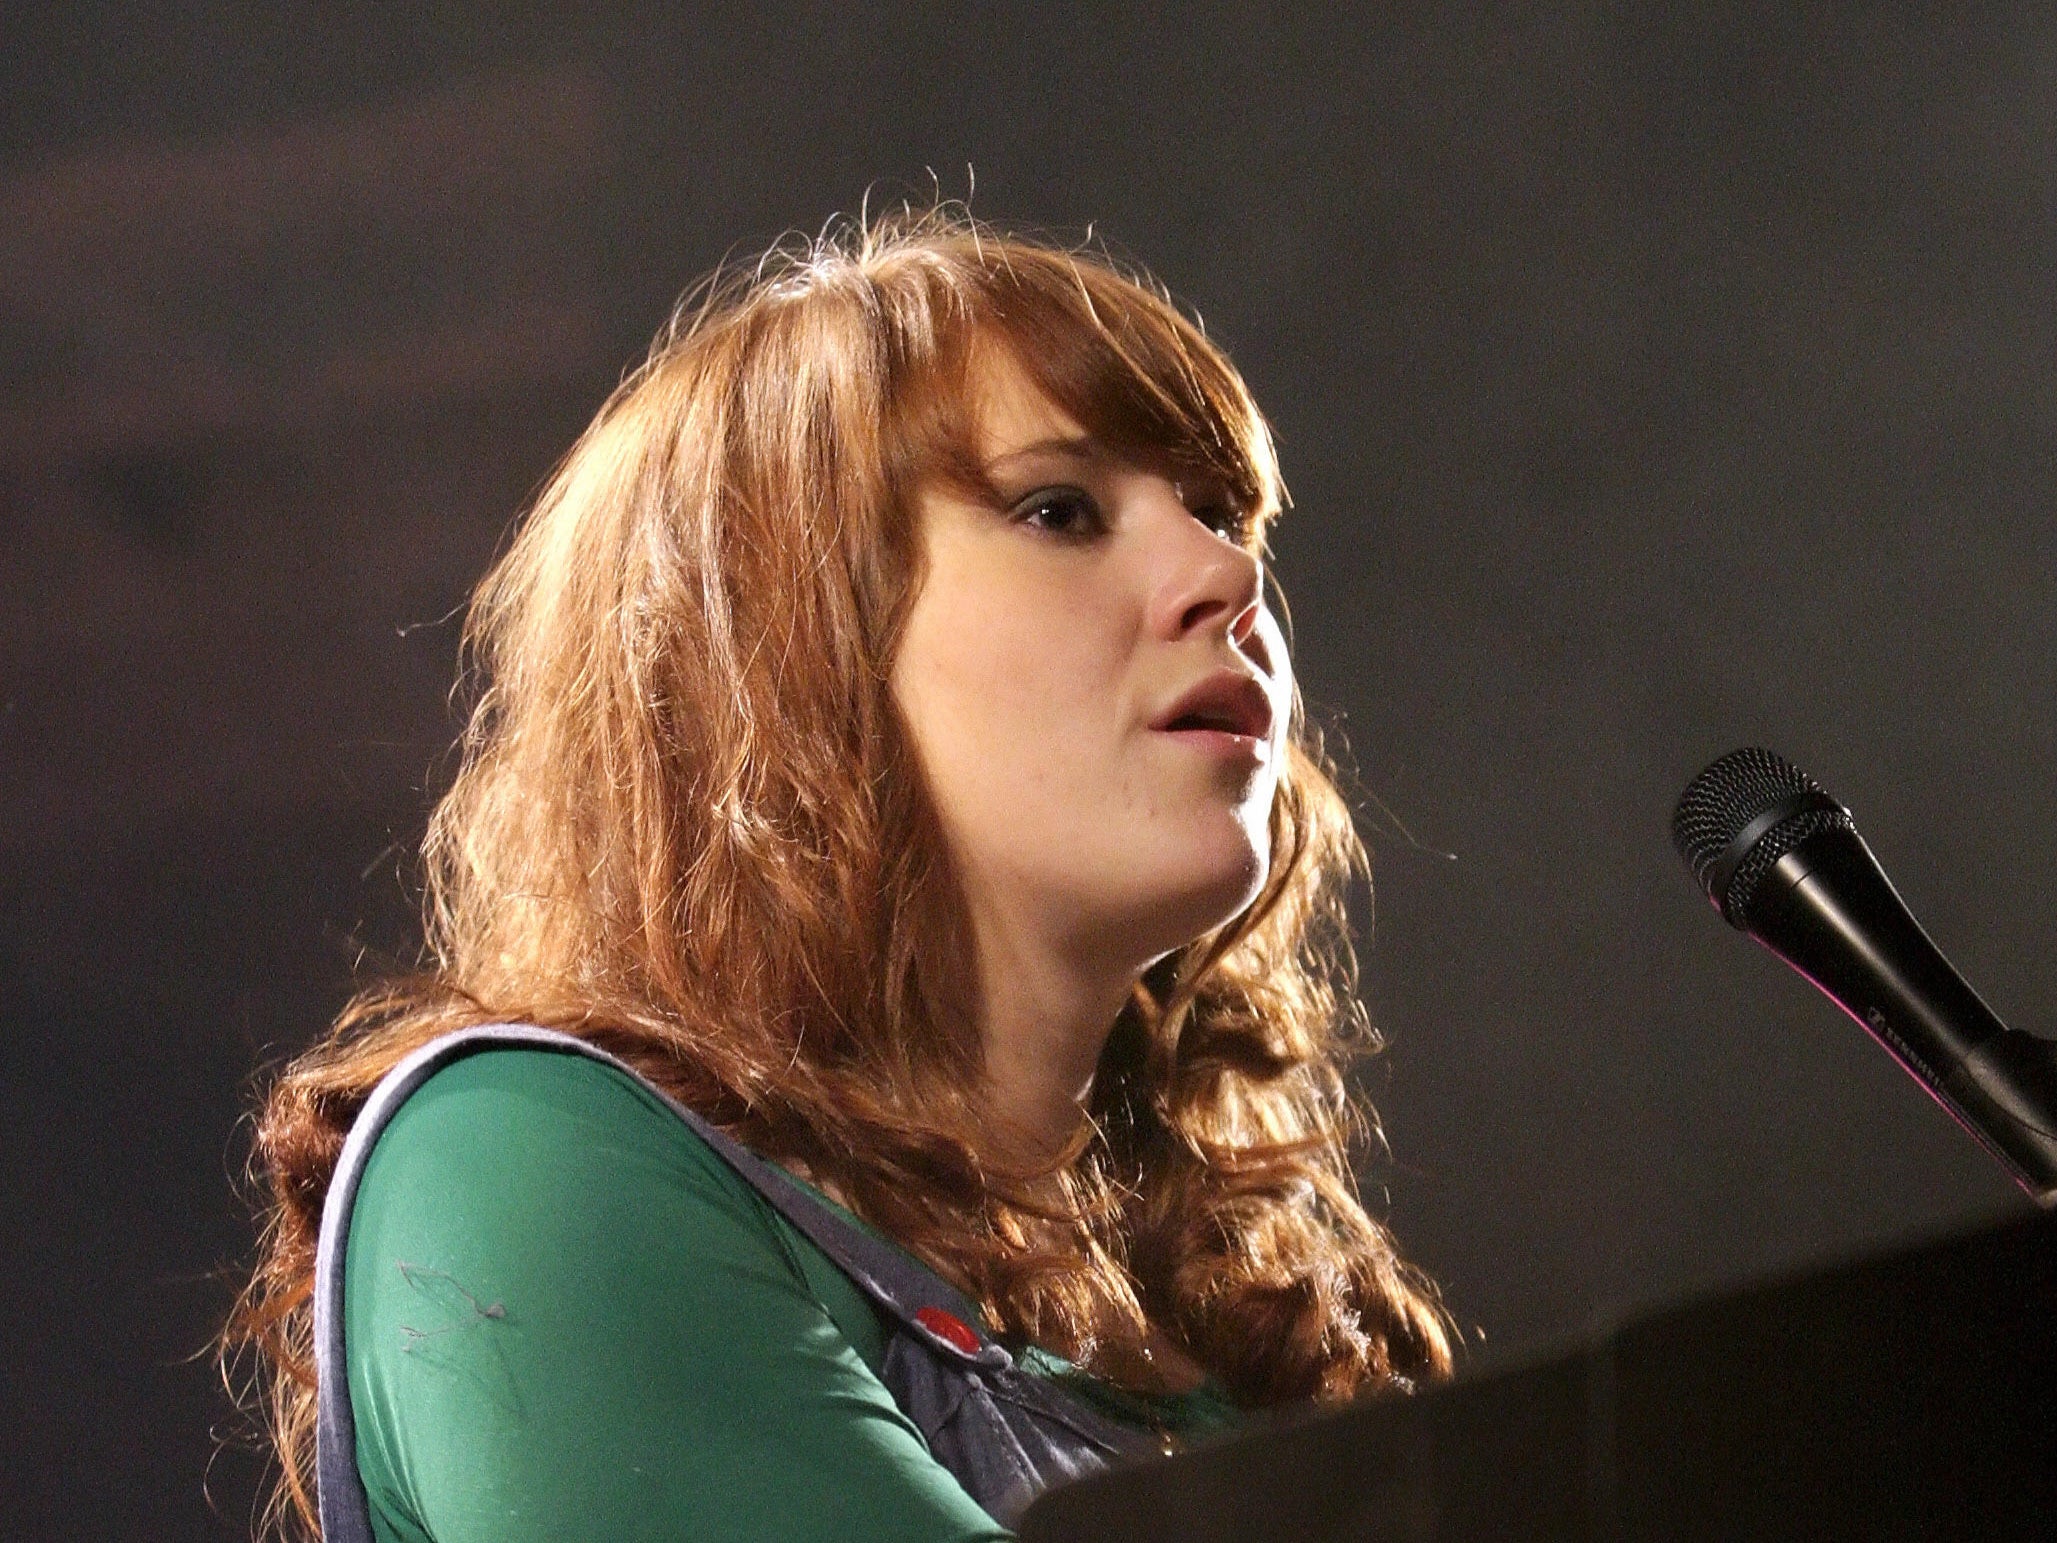 Kate Nash performing in 2007